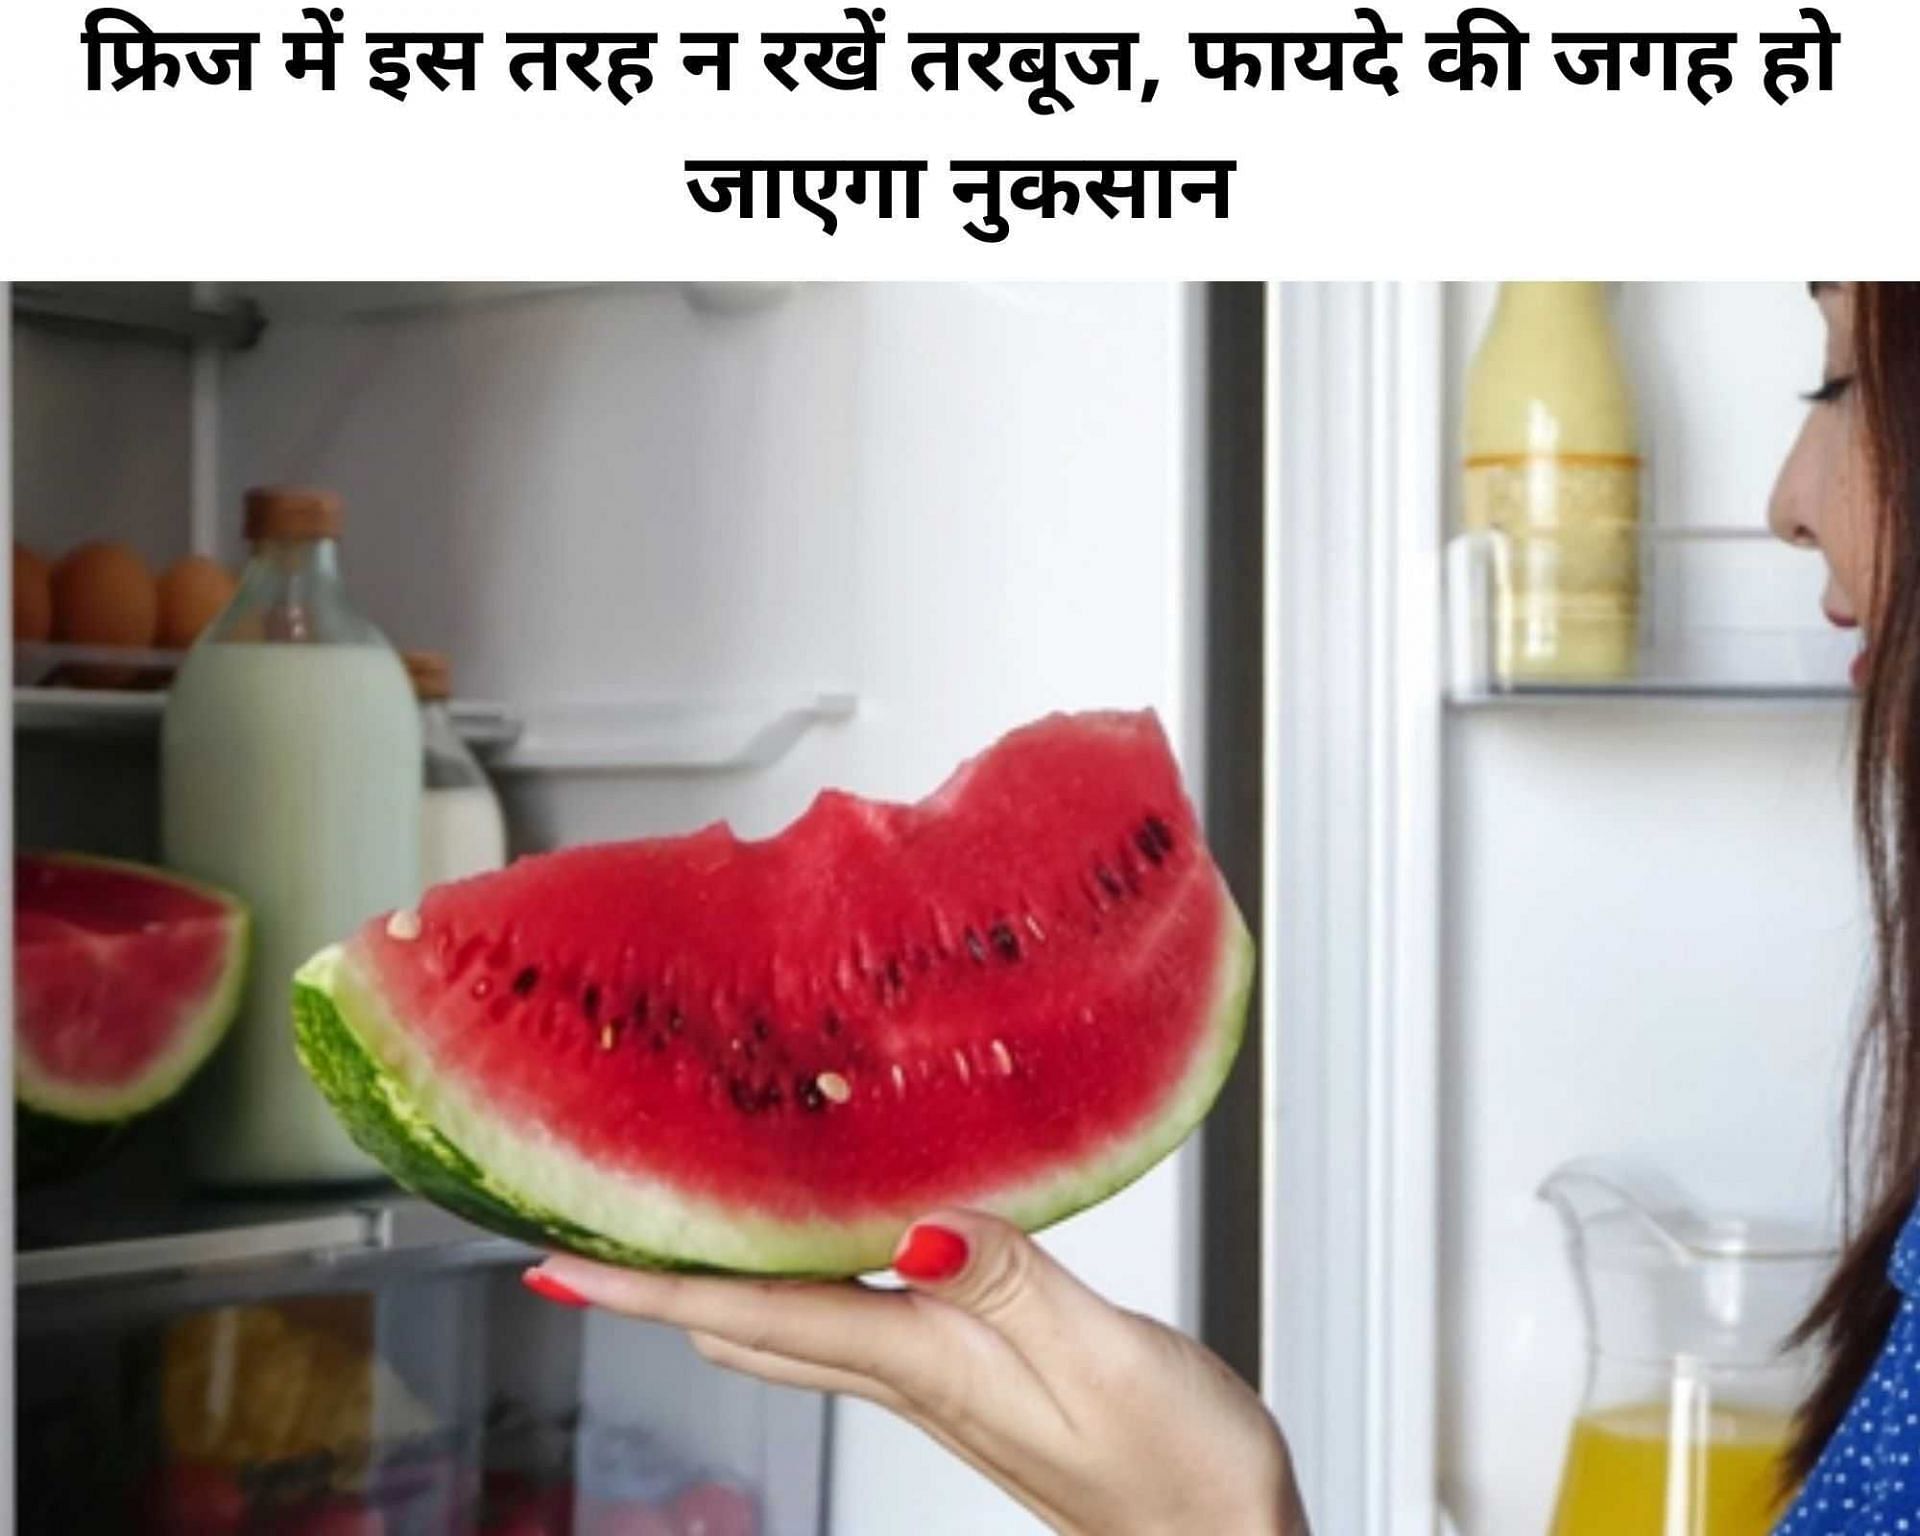 फ्रिज में इस तरह न रखें तरबूज, फायदे की जगह हो जाएगा नुकसान (फोटो - sportskeeda hindi)